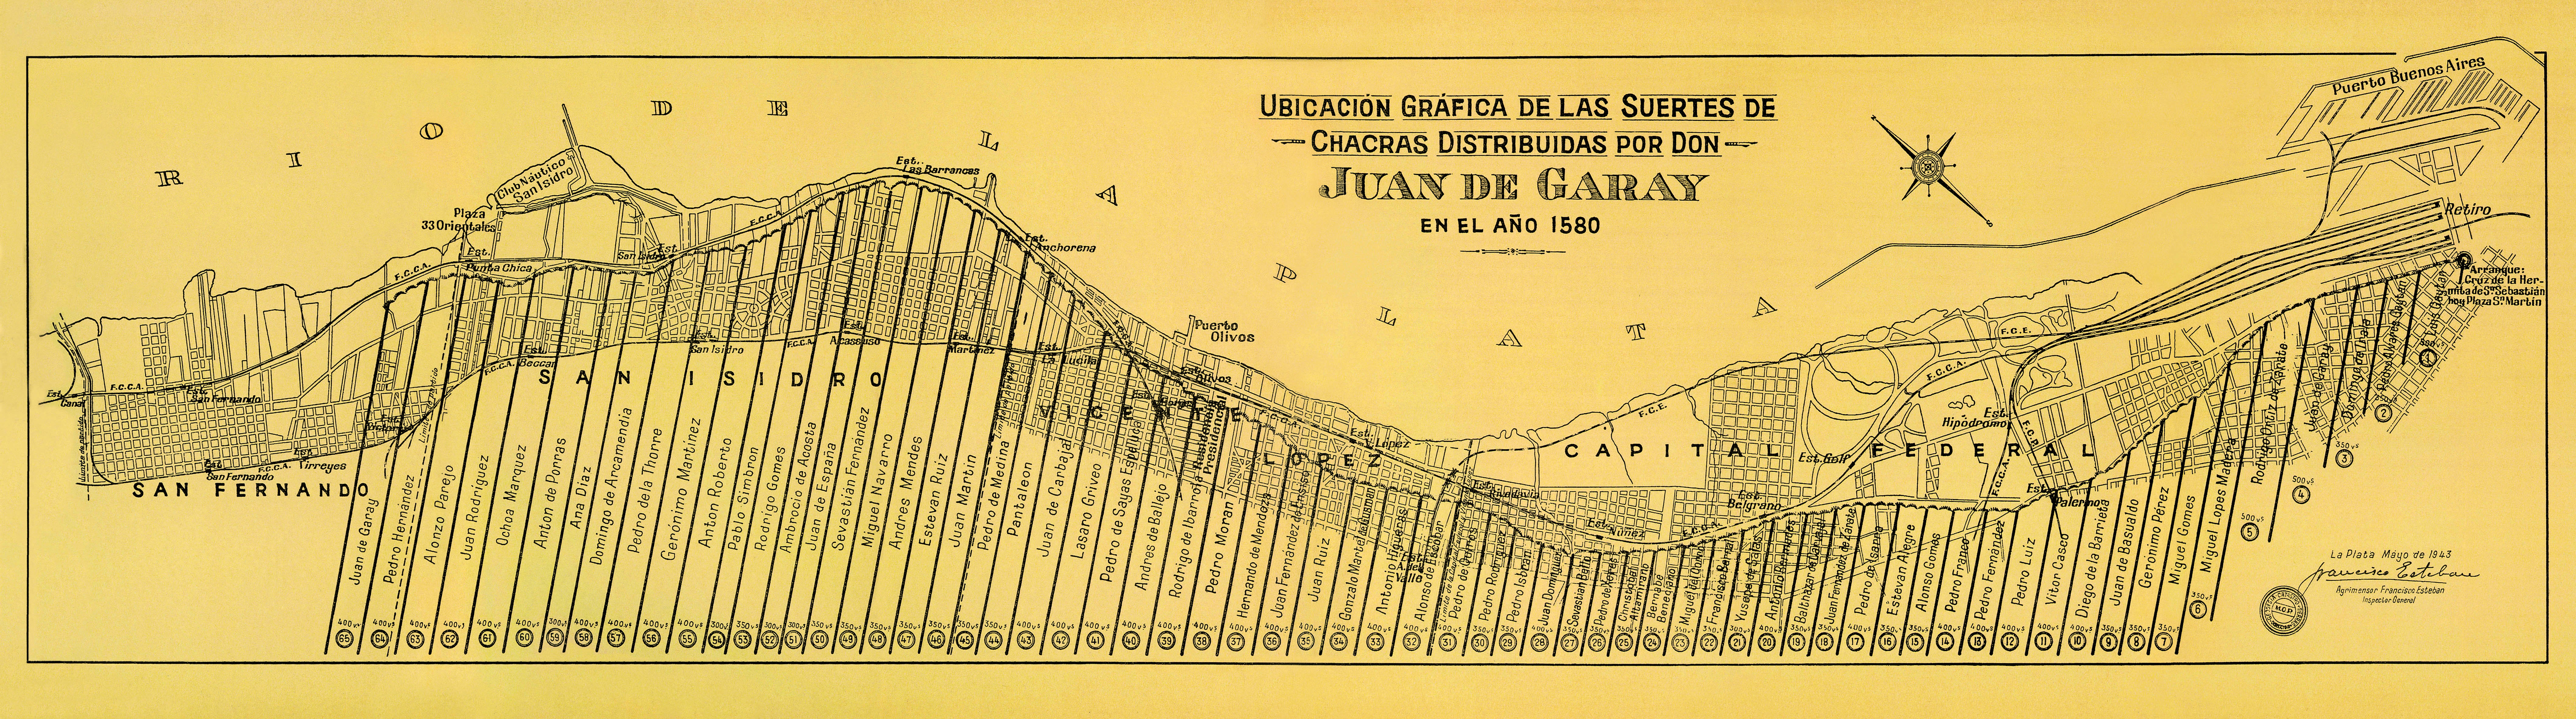 Plano del reparto de chacras en el Pago de la Costa efectuado por Juan de Garay en 1580. La "suerte" número 59 corresponde a Ana Díaz